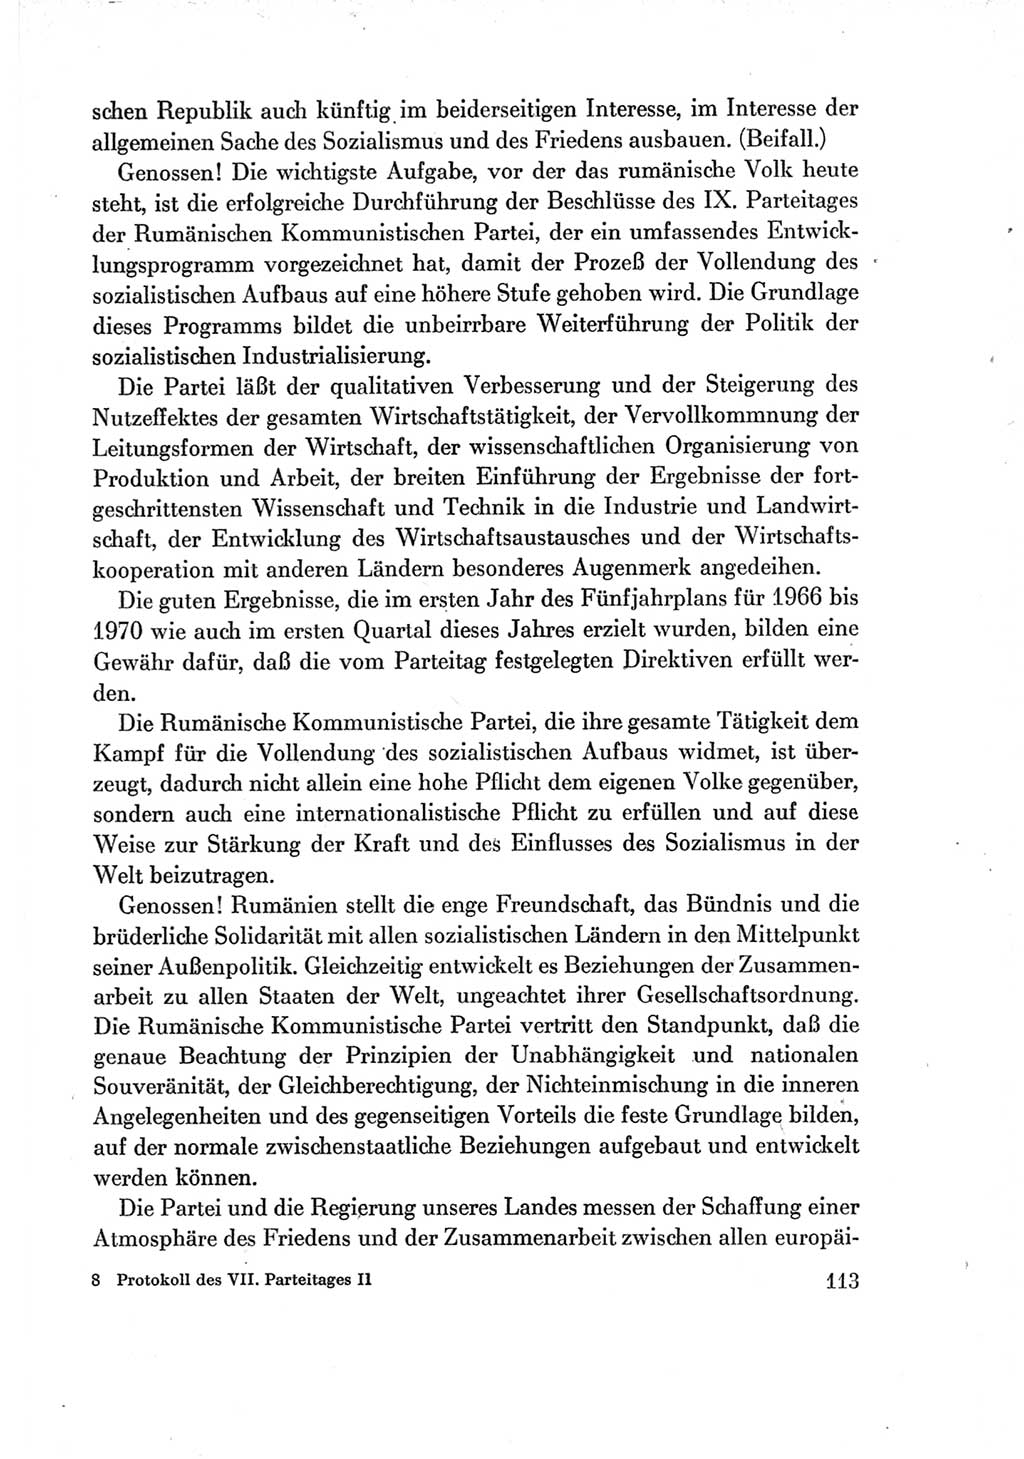 Protokoll der Verhandlungen des Ⅶ. Parteitages der Sozialistischen Einheitspartei Deutschlands (SED) [Deutsche Demokratische Republik (DDR)] 1967, Band Ⅱ, Seite 113 (Prot. Verh. Ⅶ. PT SED DDR 1967, Bd. Ⅱ, S. 113)